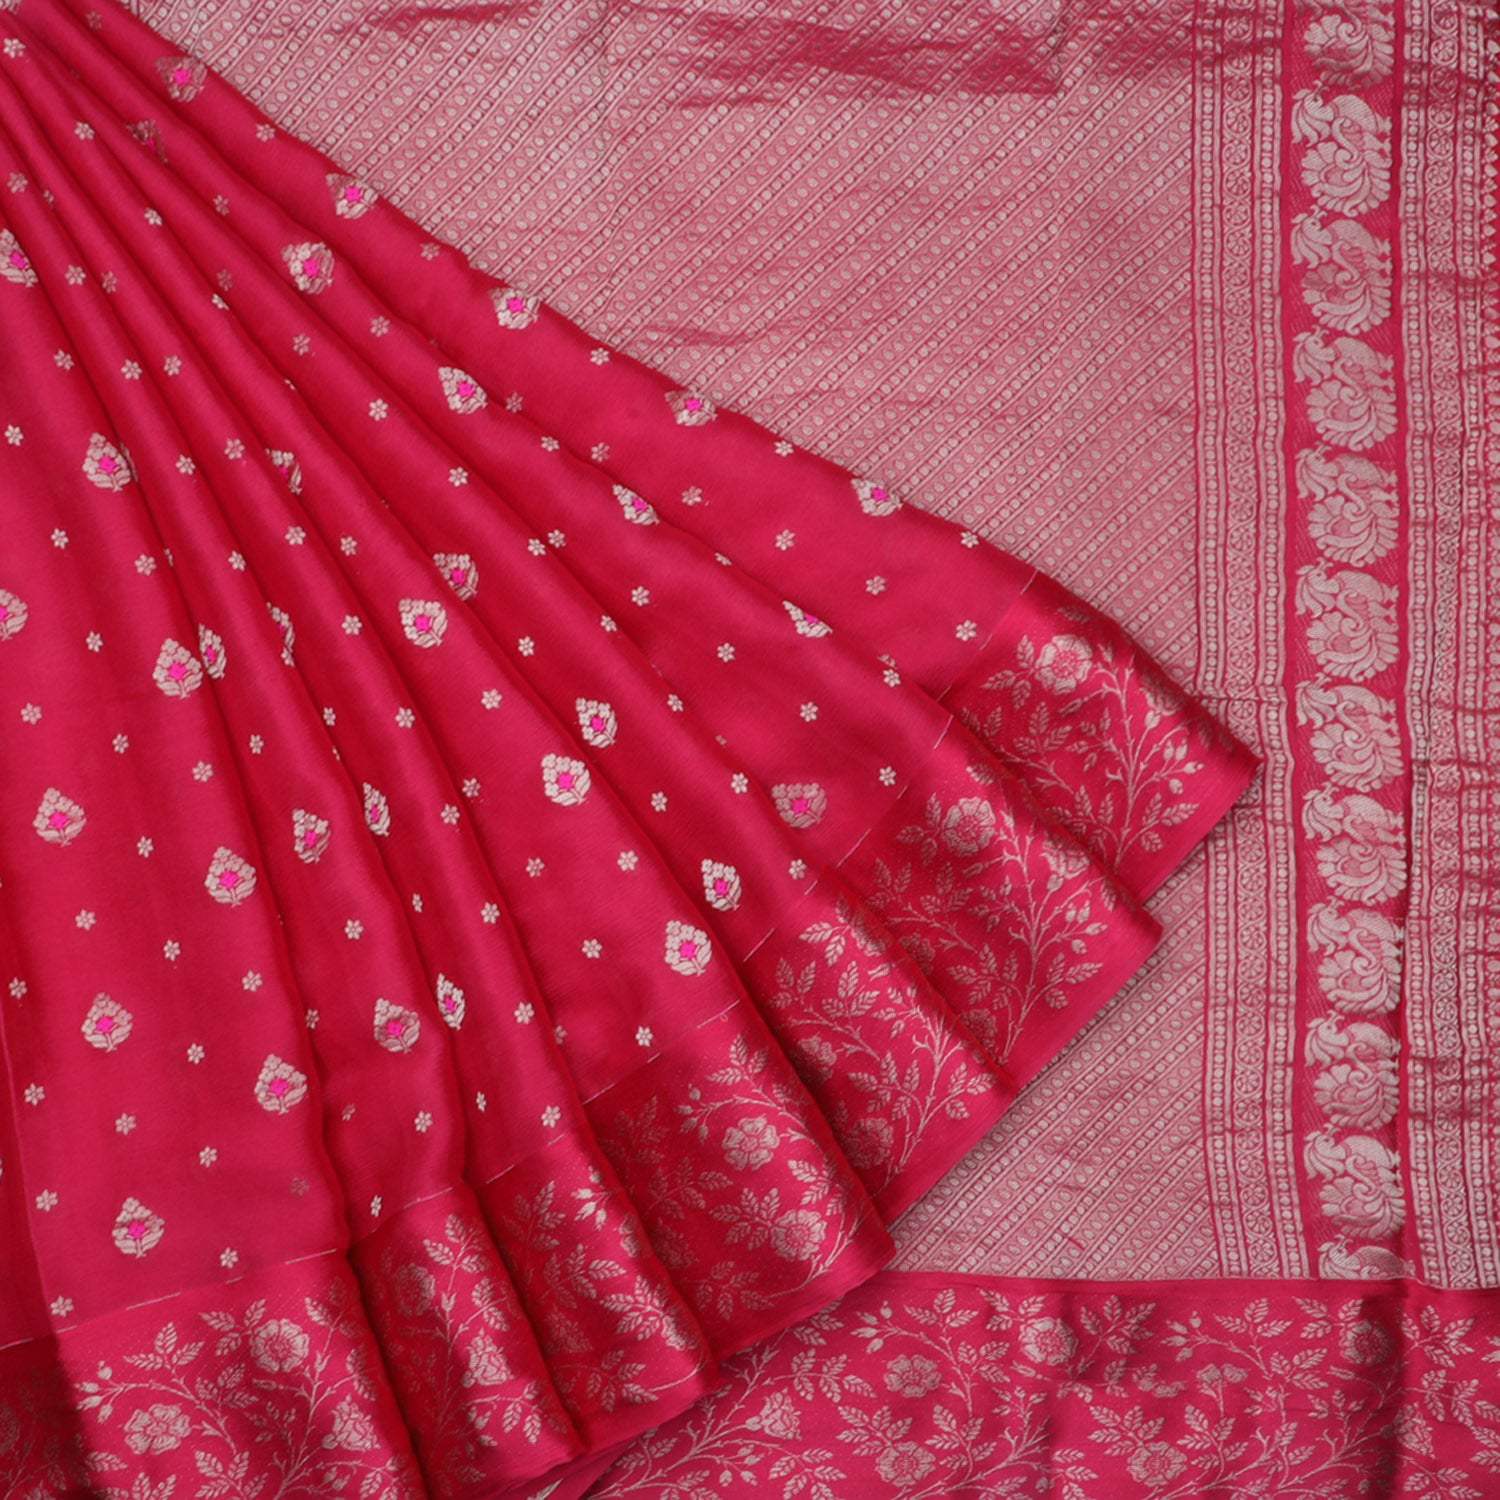 Deep Red Banarasi Silk Handloom Saree With Floral Buttis - Singhania's